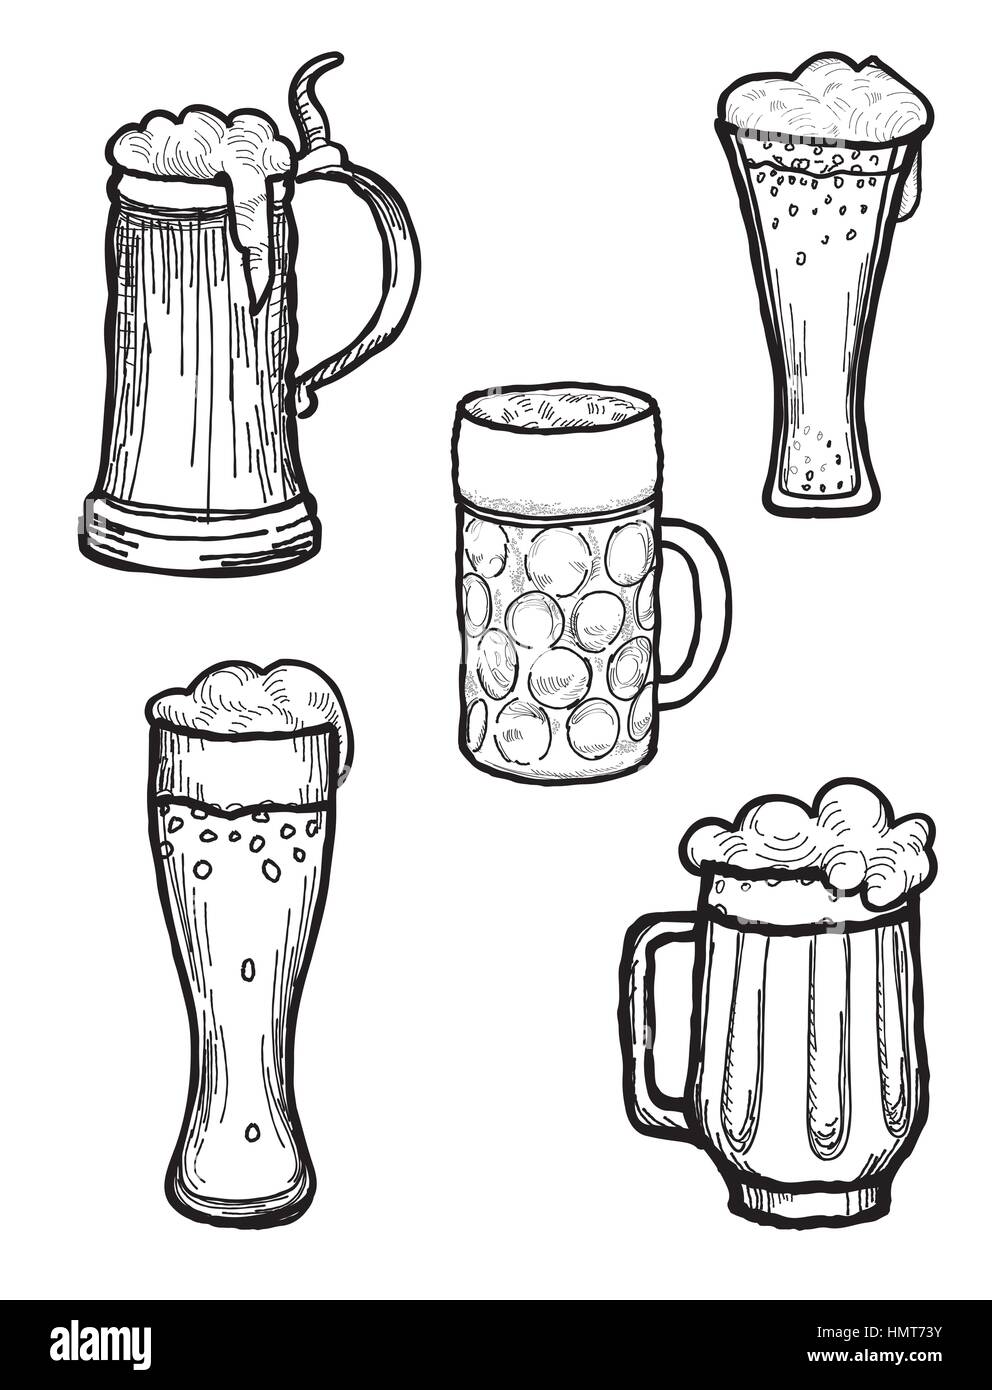 Bier ware im Retro-stil eingerichtet. Bierkrug und Bier Glas silhouette doodle Sammlung eingraviert. Stock Vektor